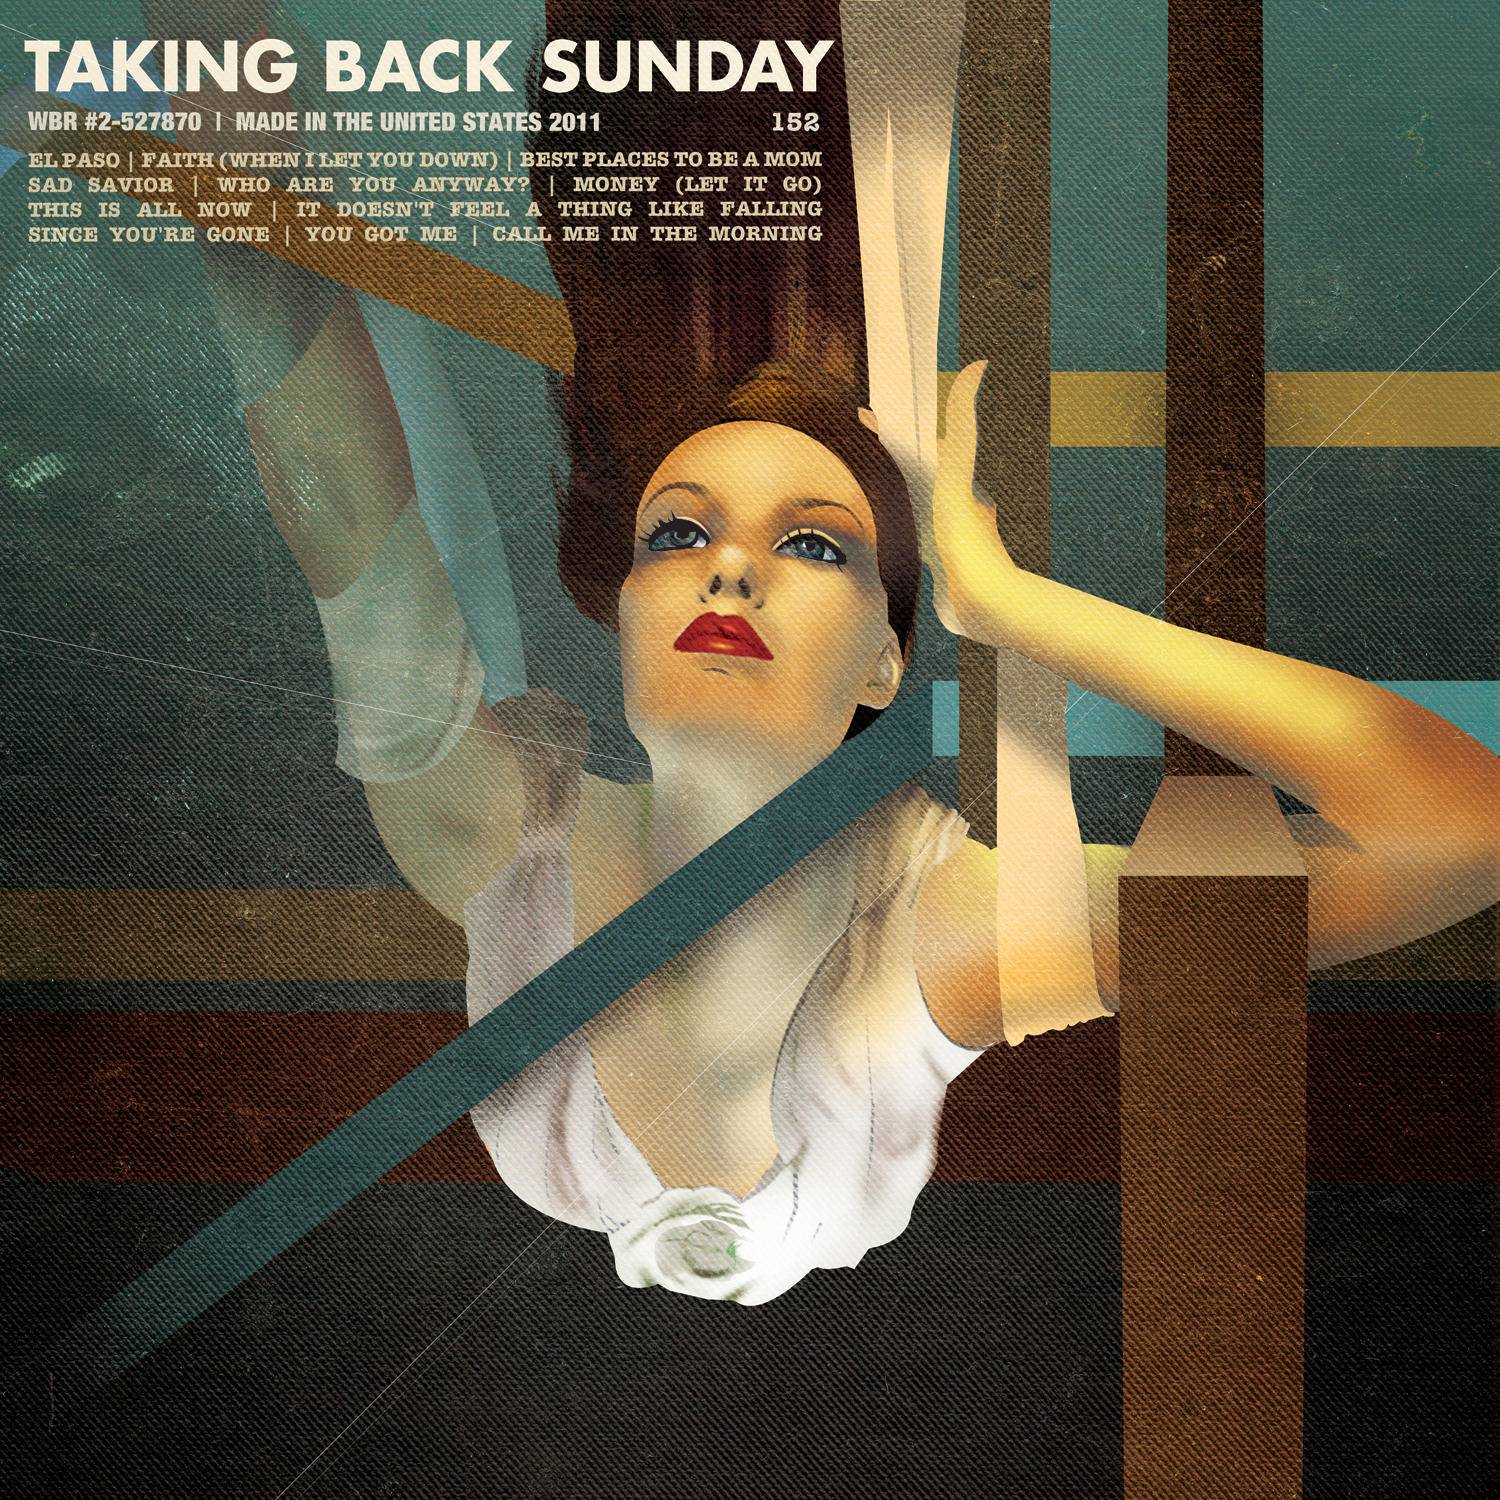 Taking Back Sunday - Taking Back Sunday (2011)